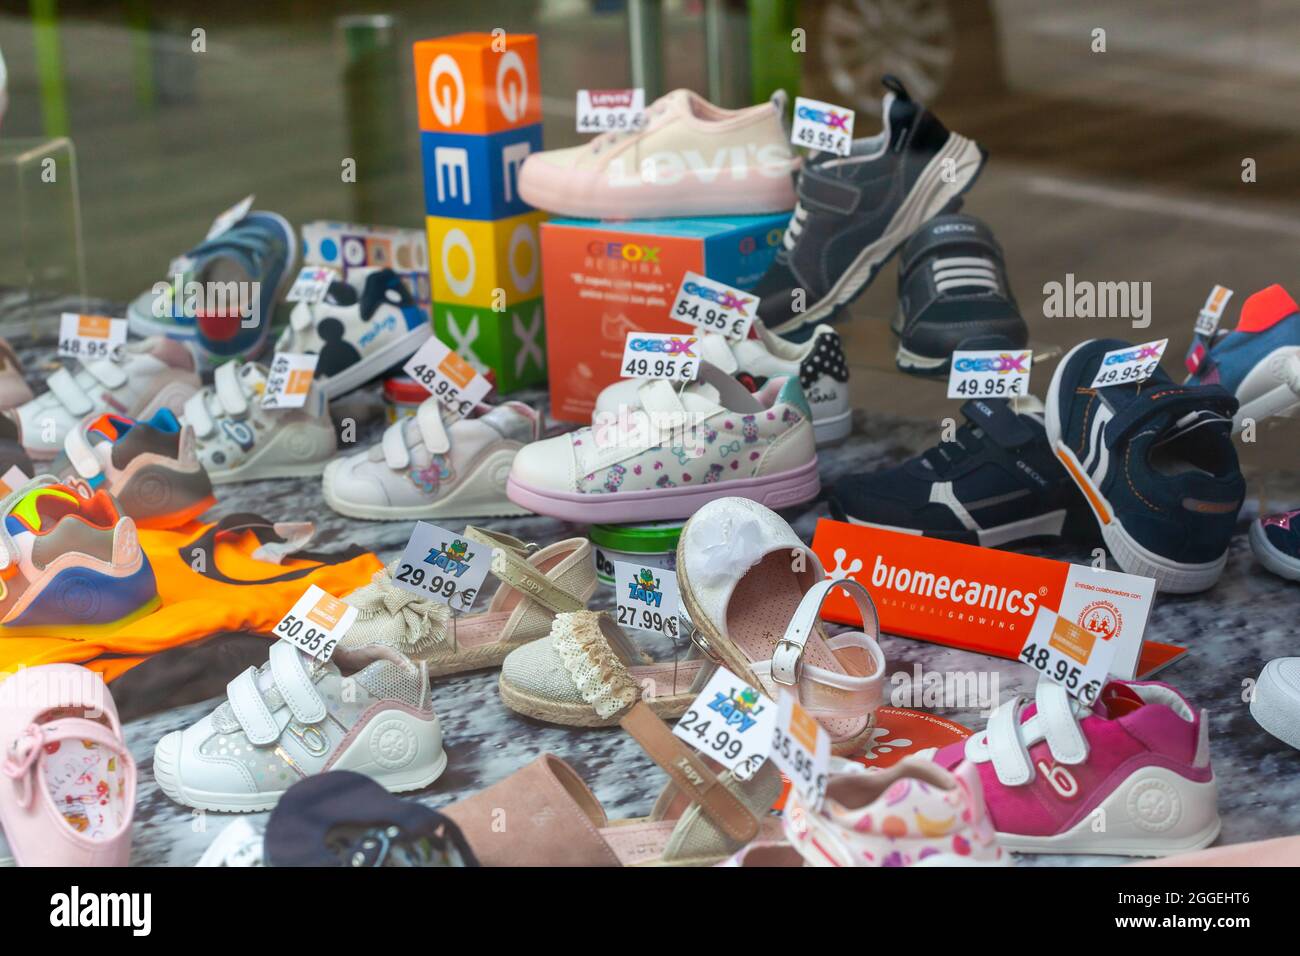 PLASENCIA, SPANIEN - 14. Apr 2021: Ein Straßenstand mit bekannten Markenschuhen und -Schuhen für Kleinkinder und Kleinkinder mit Preisschildern Stockfoto